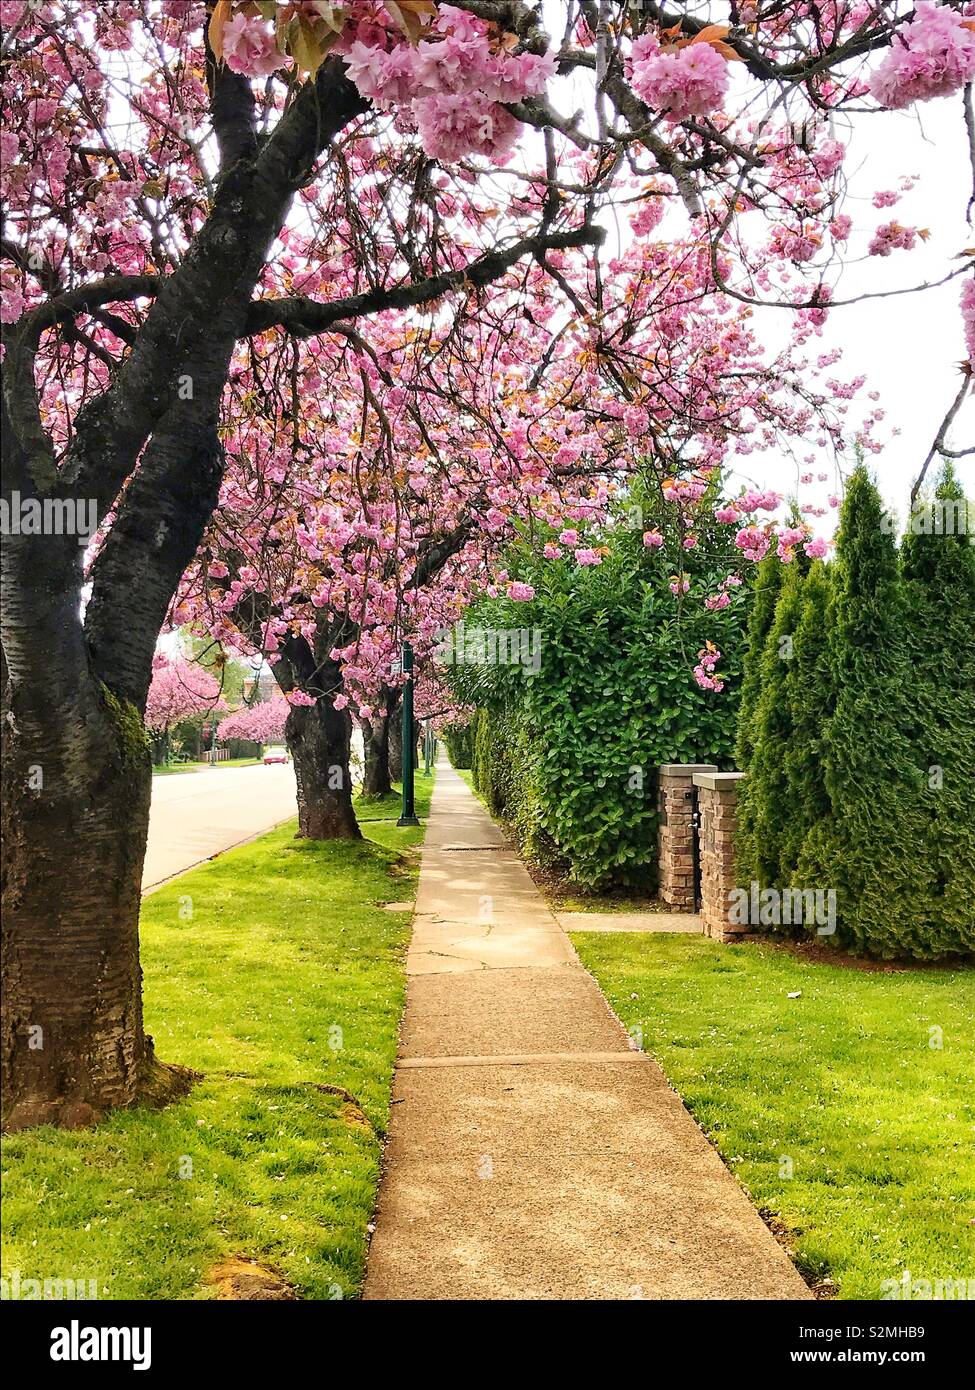 Trottoir bordé d'arbres avec des fleurs de cerisier rose à Vancouver Canada Banque D'Images